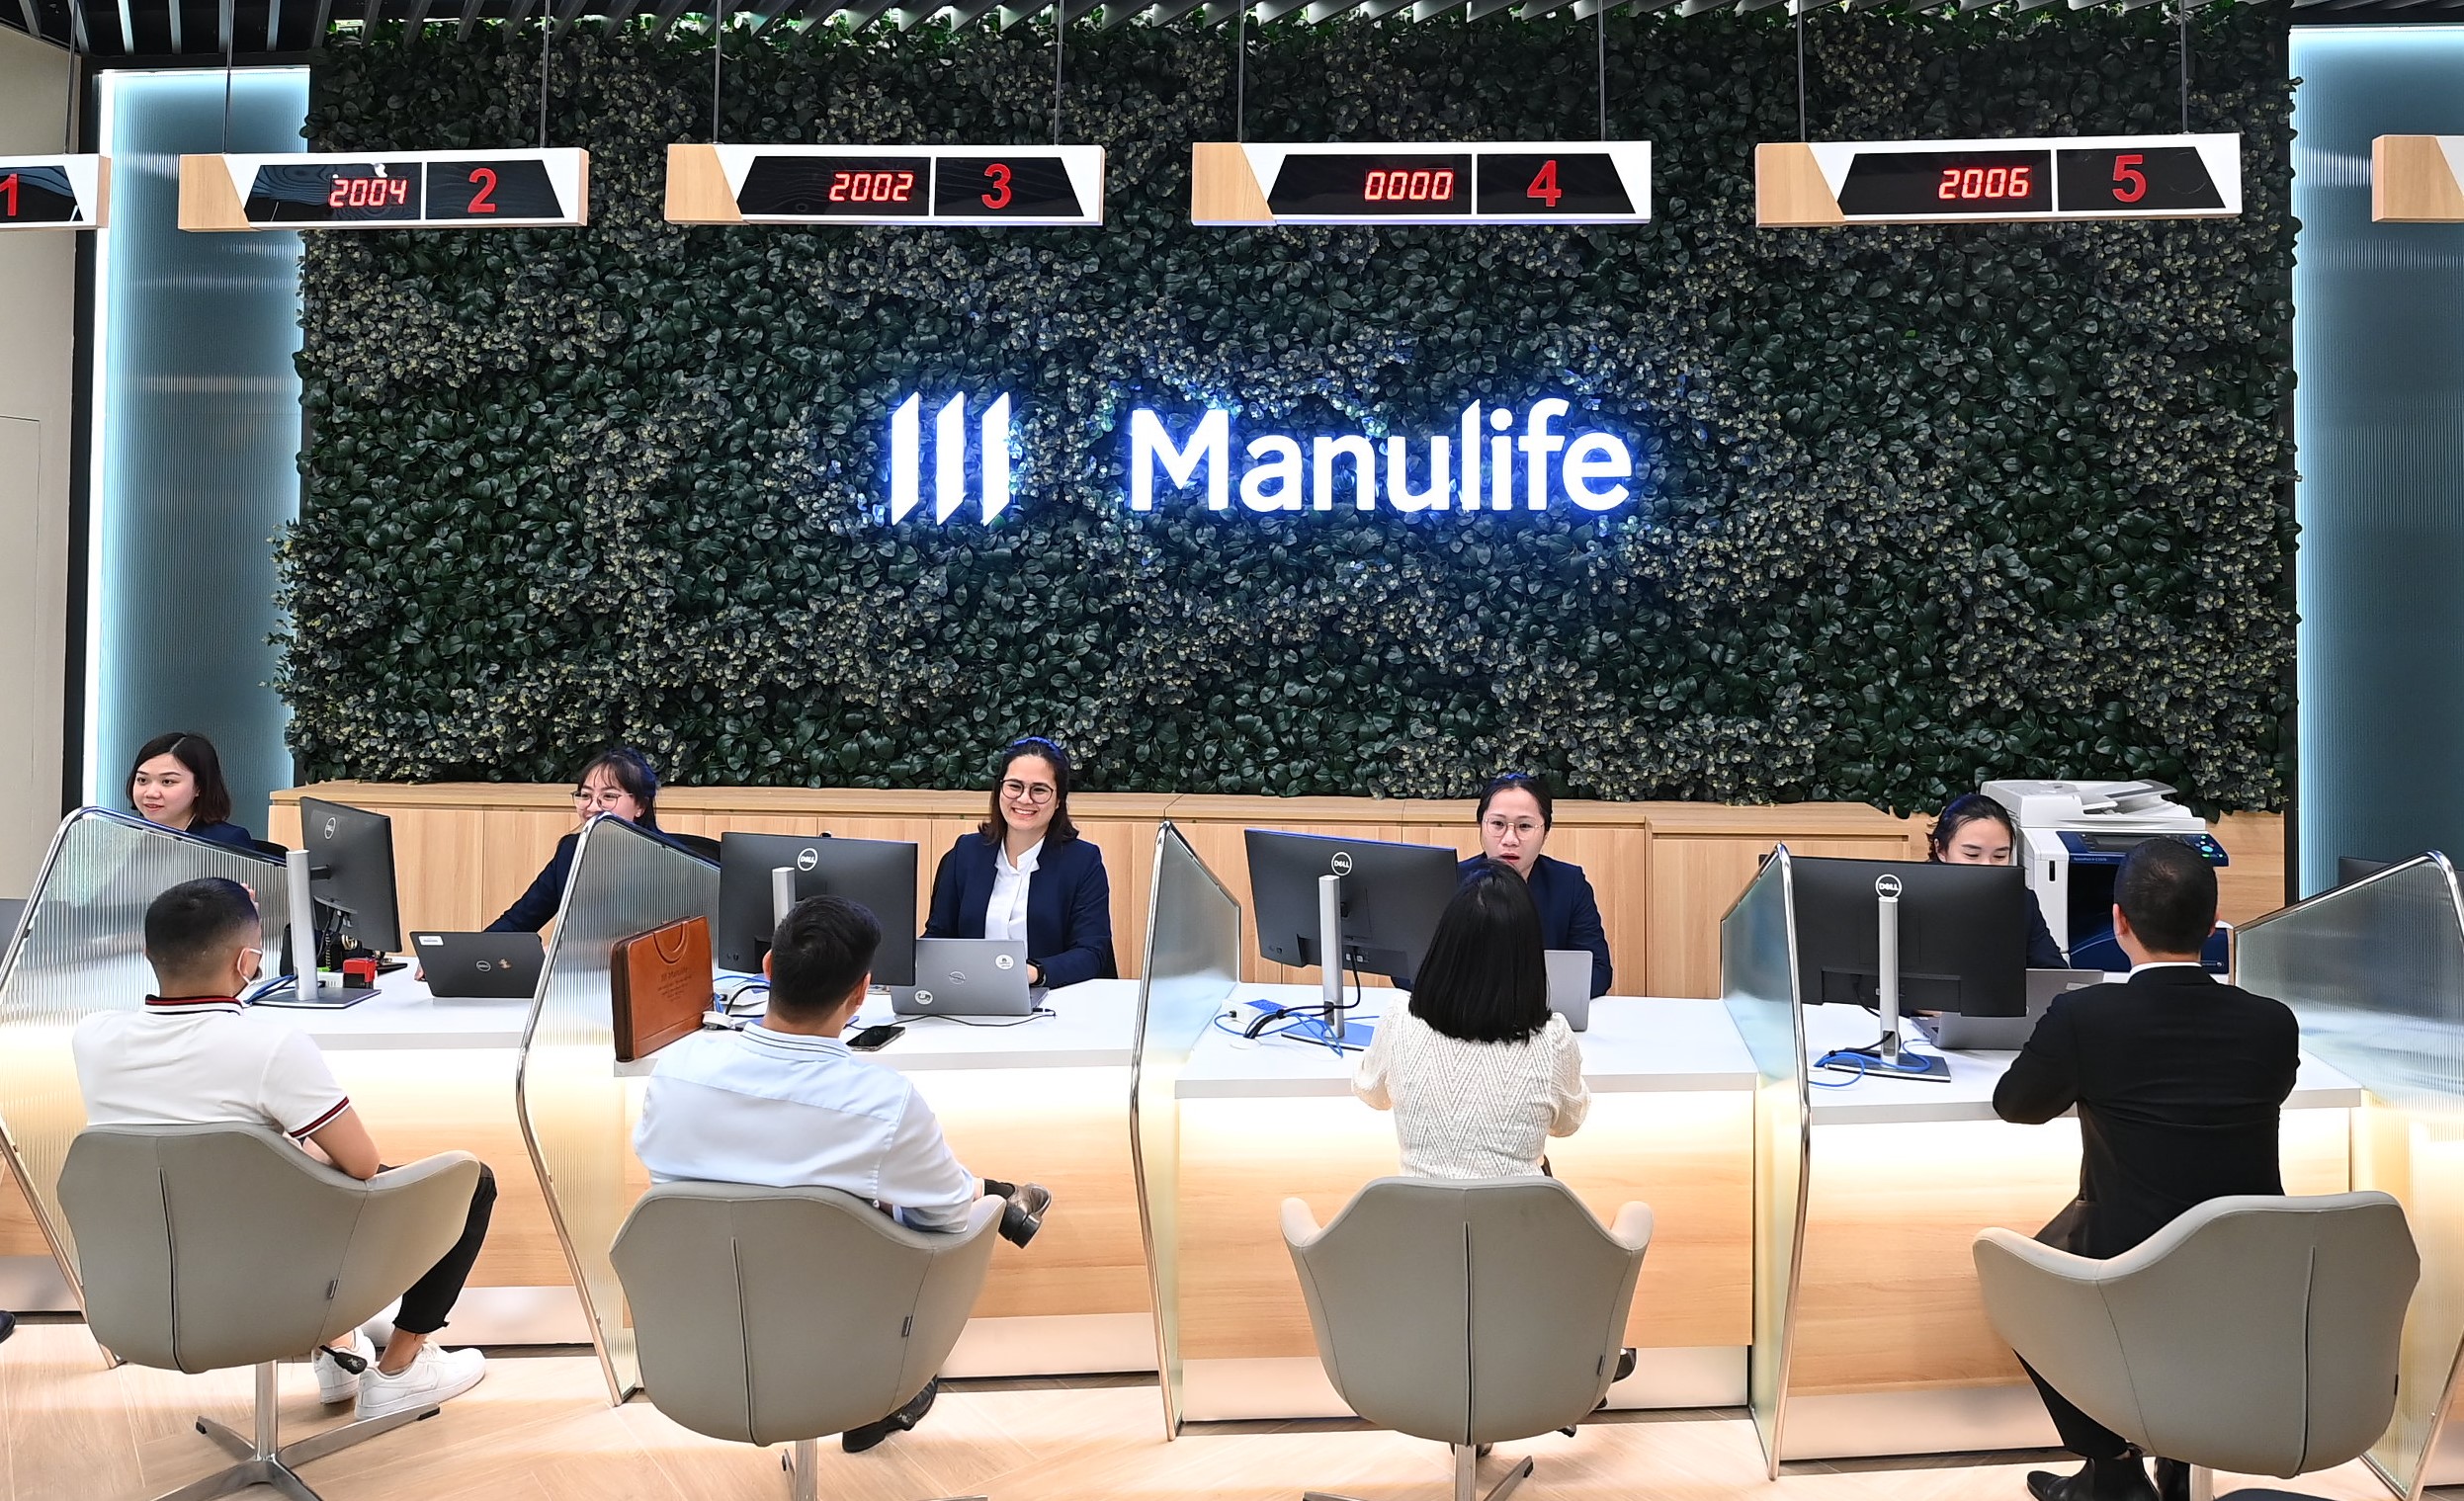 Kinh doanh bảo hiểm giảm mạnh, Manulife tăng đầu tư vào cổ phiếu- Ảnh 1.